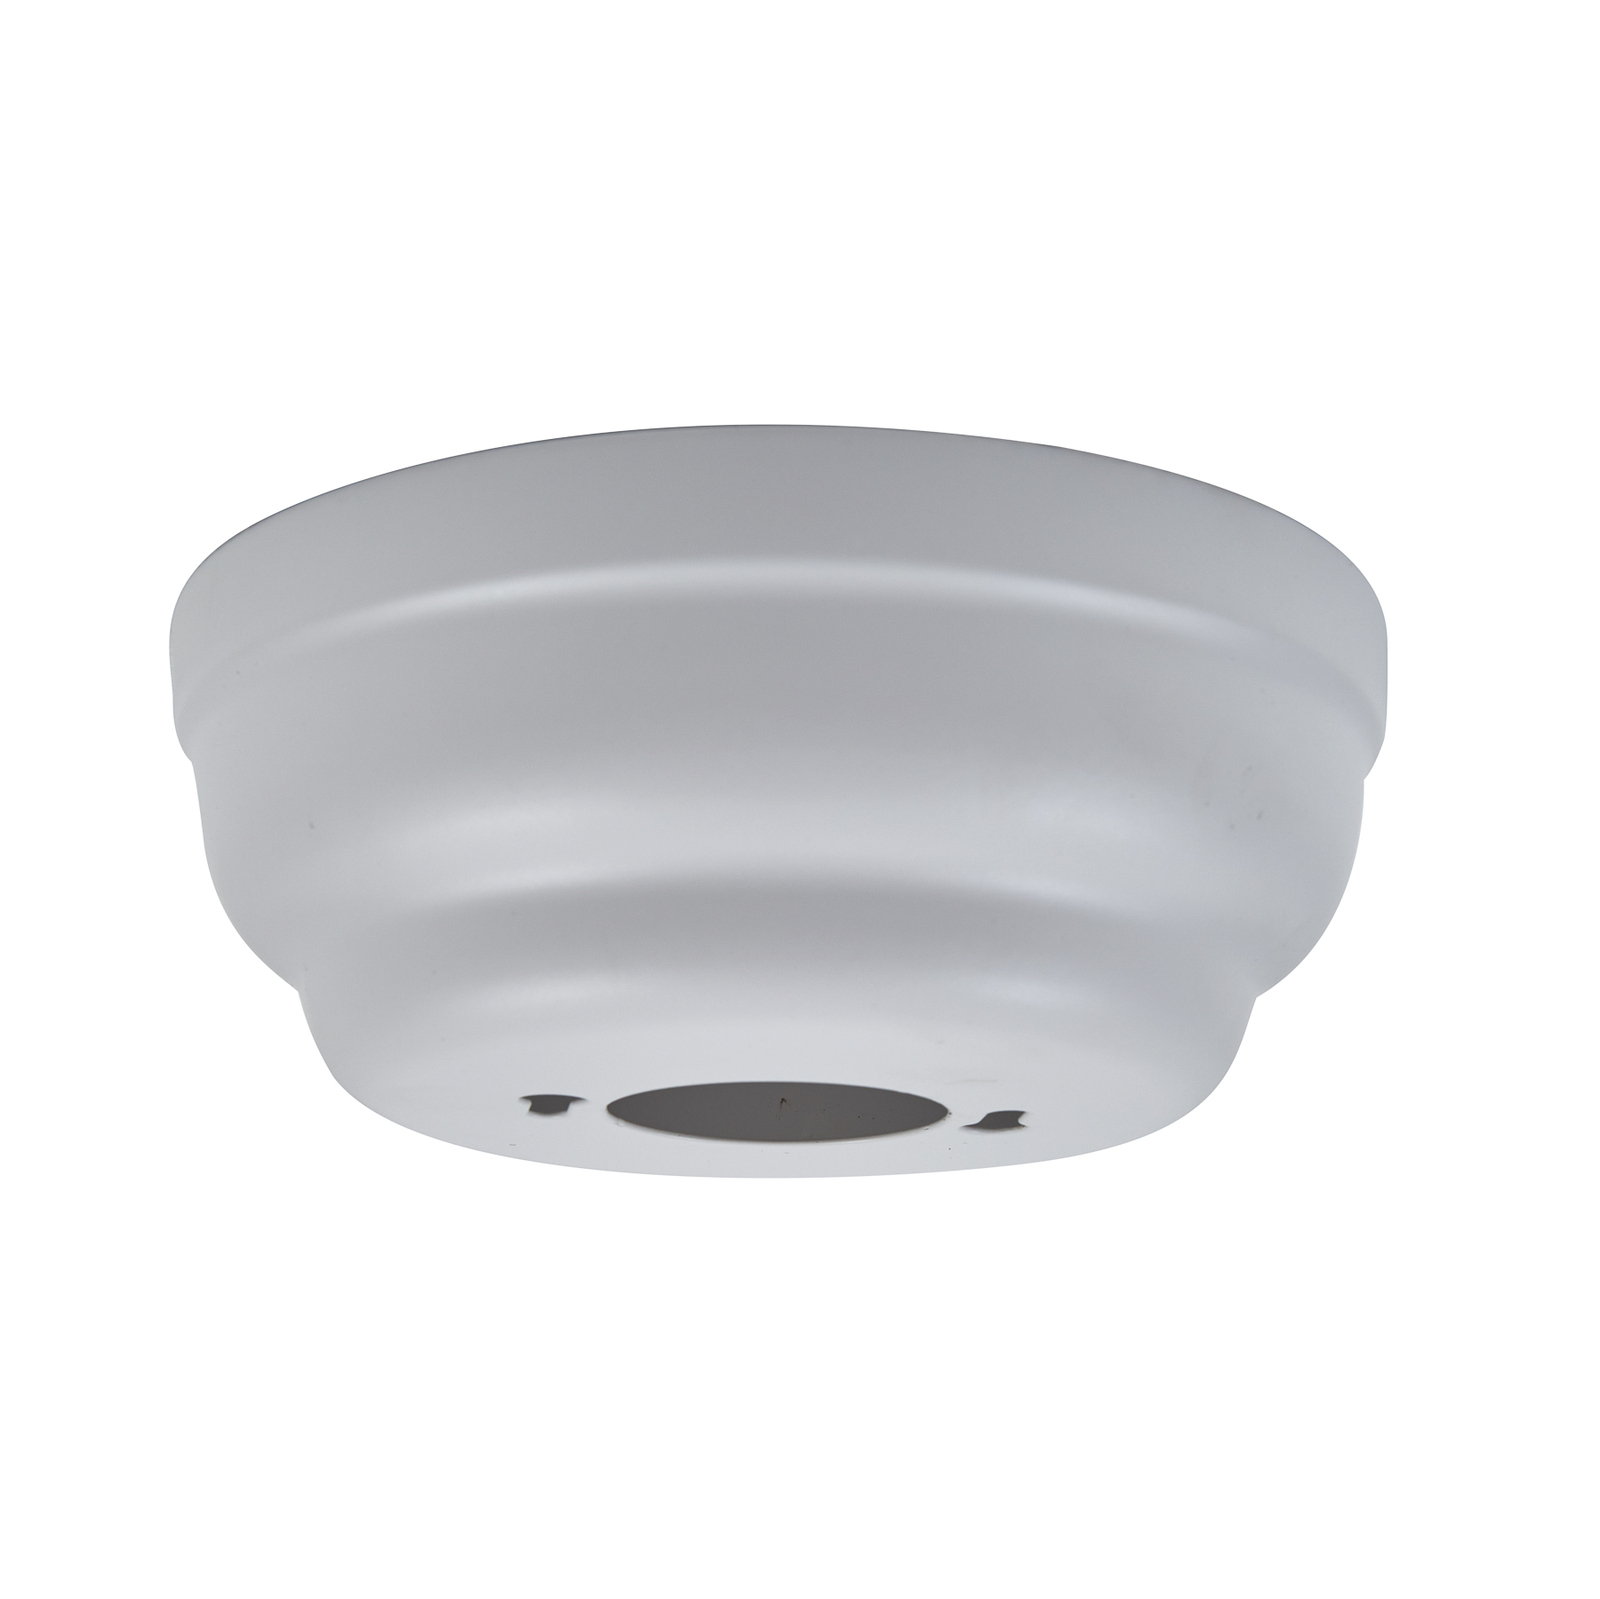 Lindby ceiling fan with light Litur, quiet, Ø 77 cm, E27